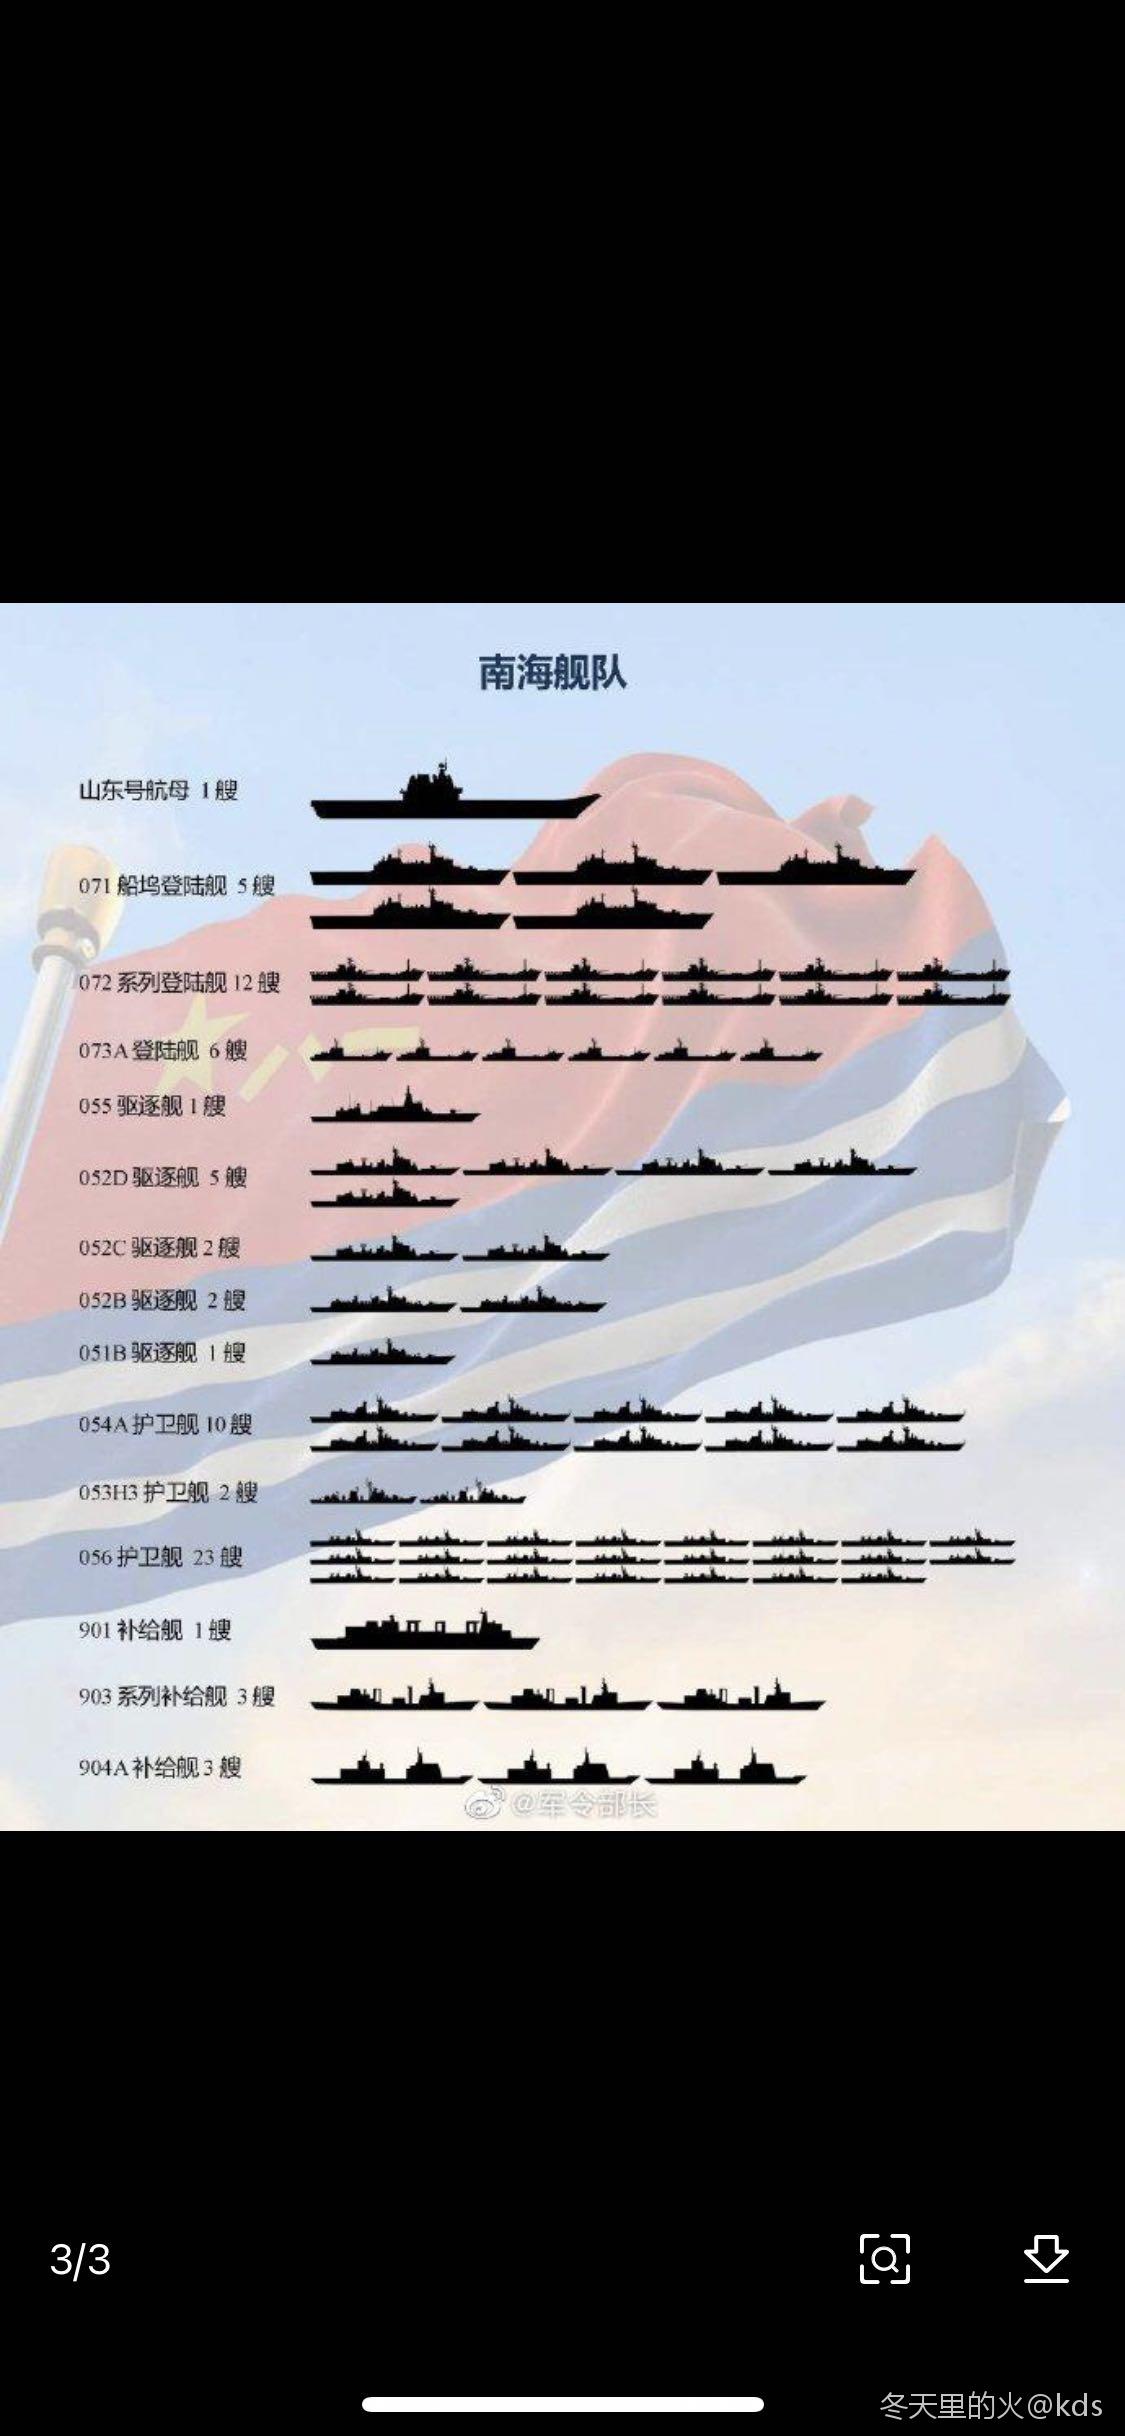 2019中国海军军舰图谱图片